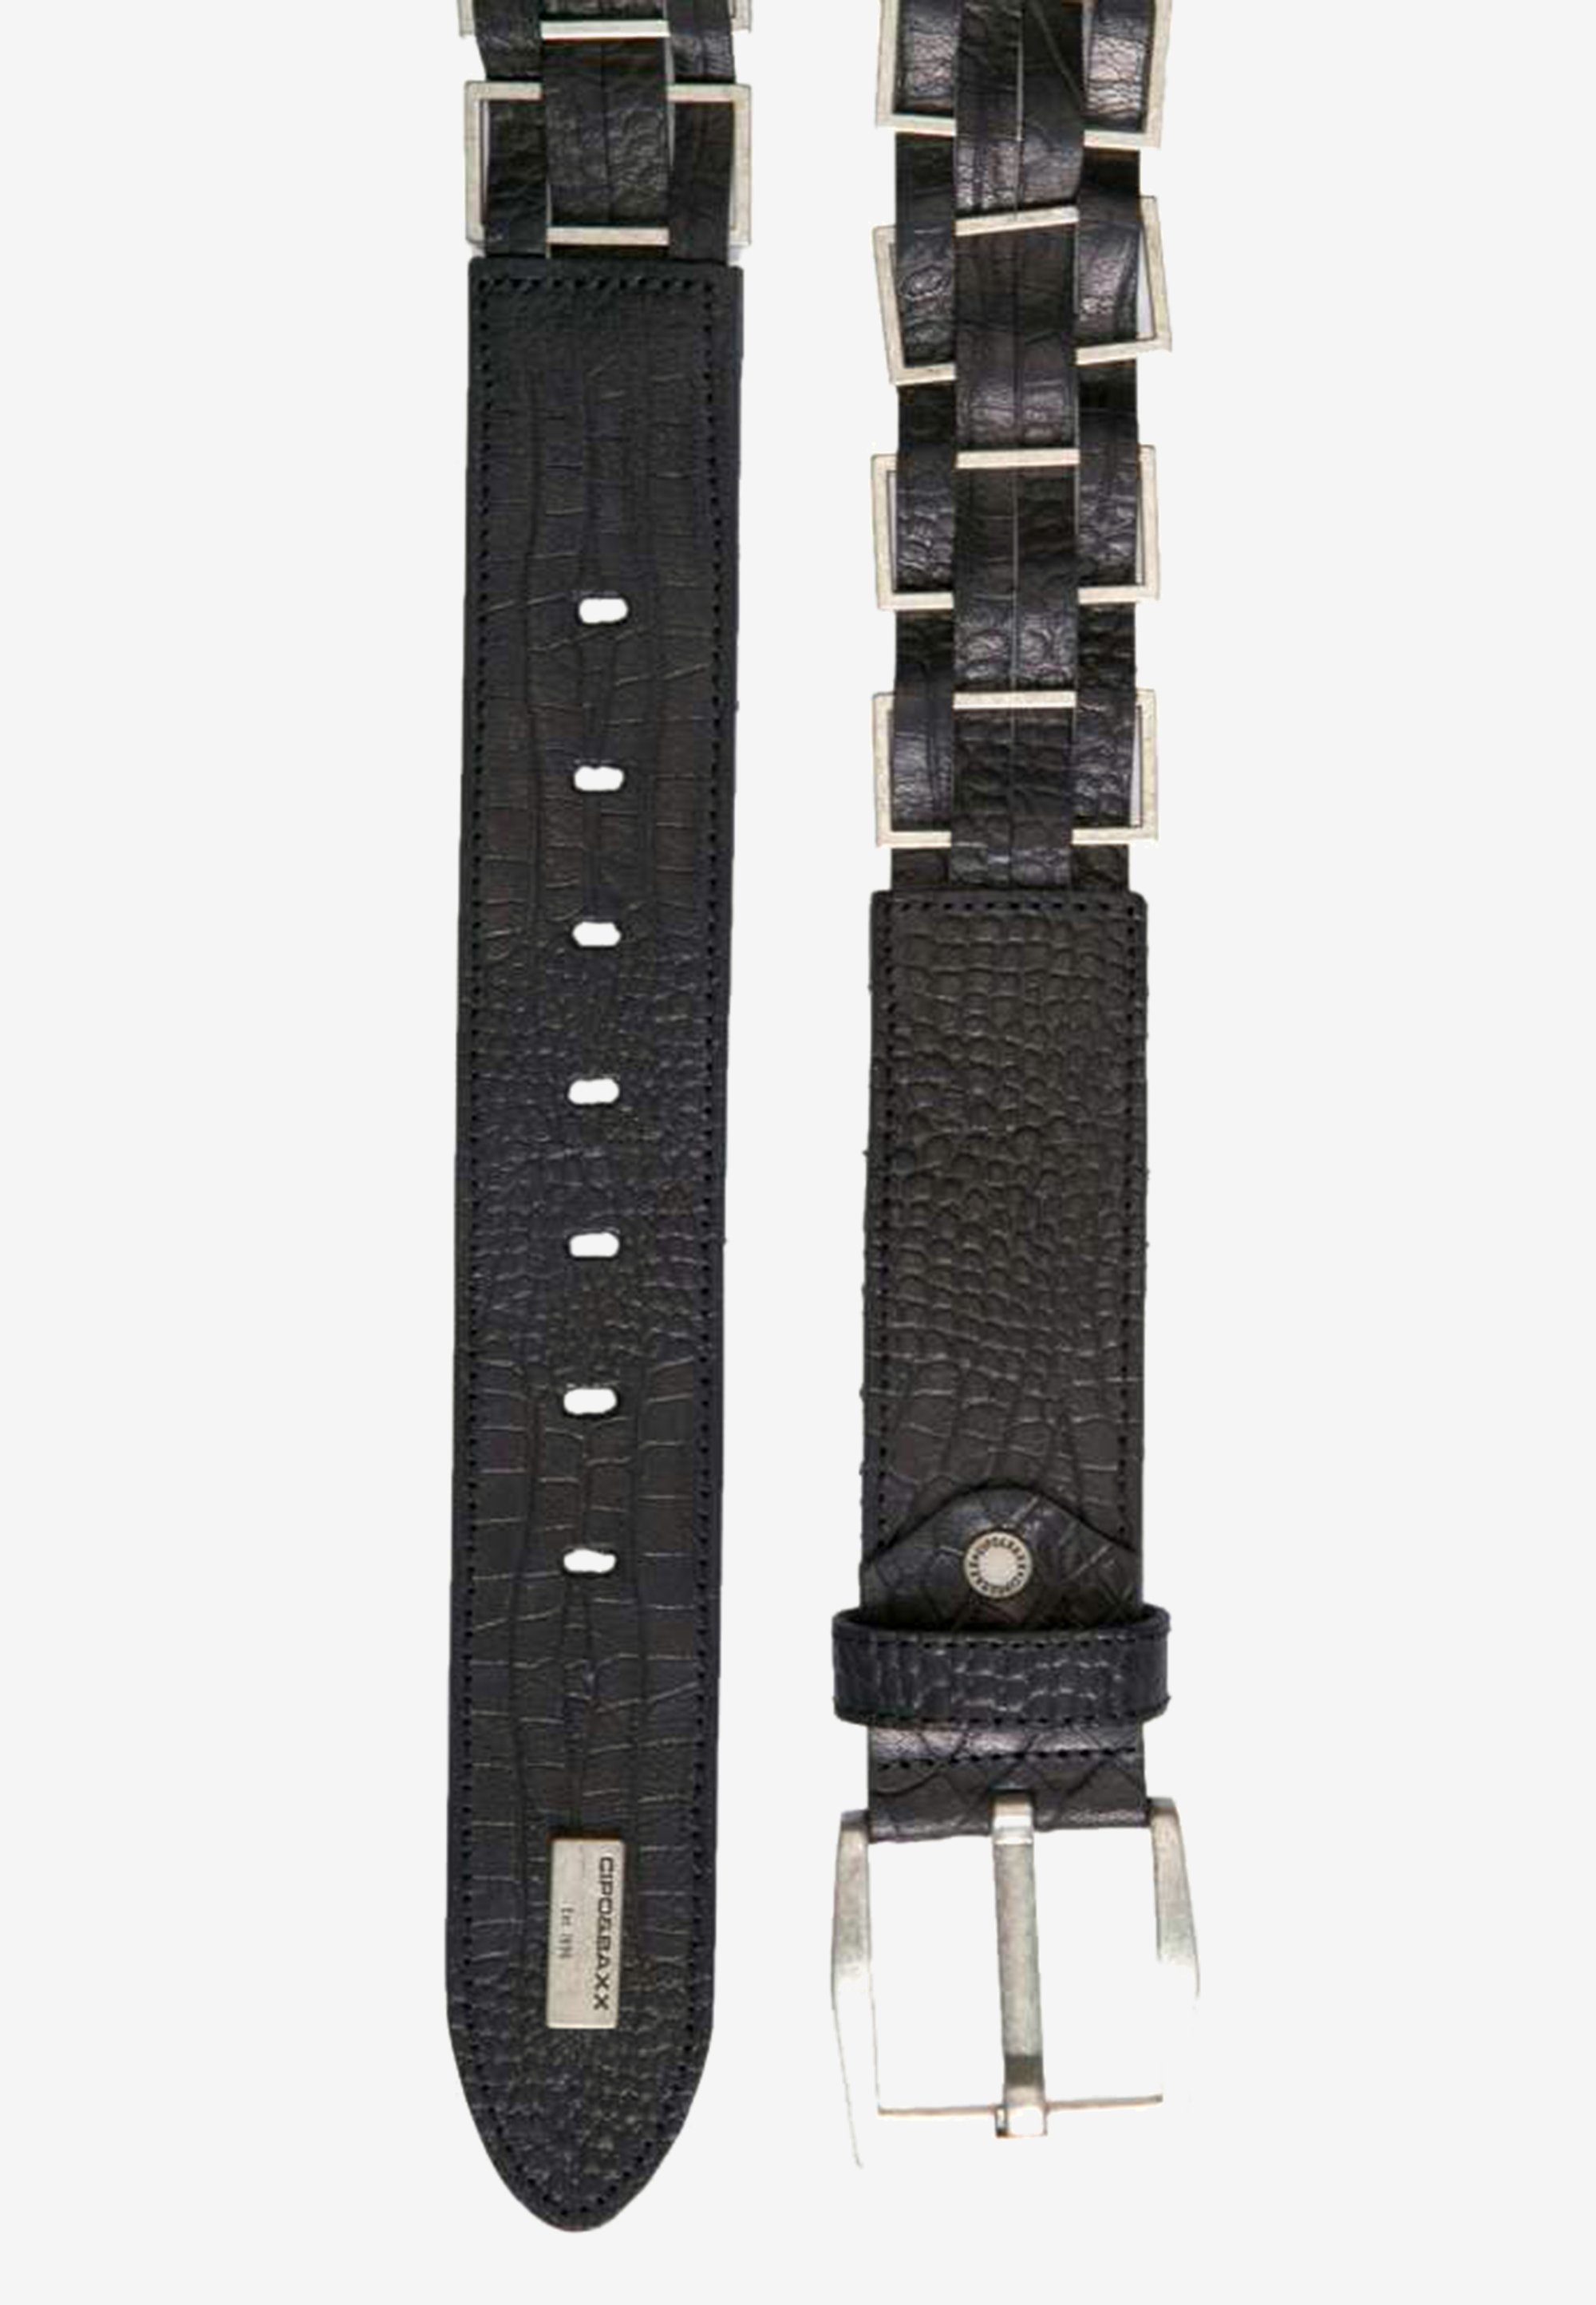 Cipo & modischen Ledergürtel mit Metall-Elementen Baxx schwarz